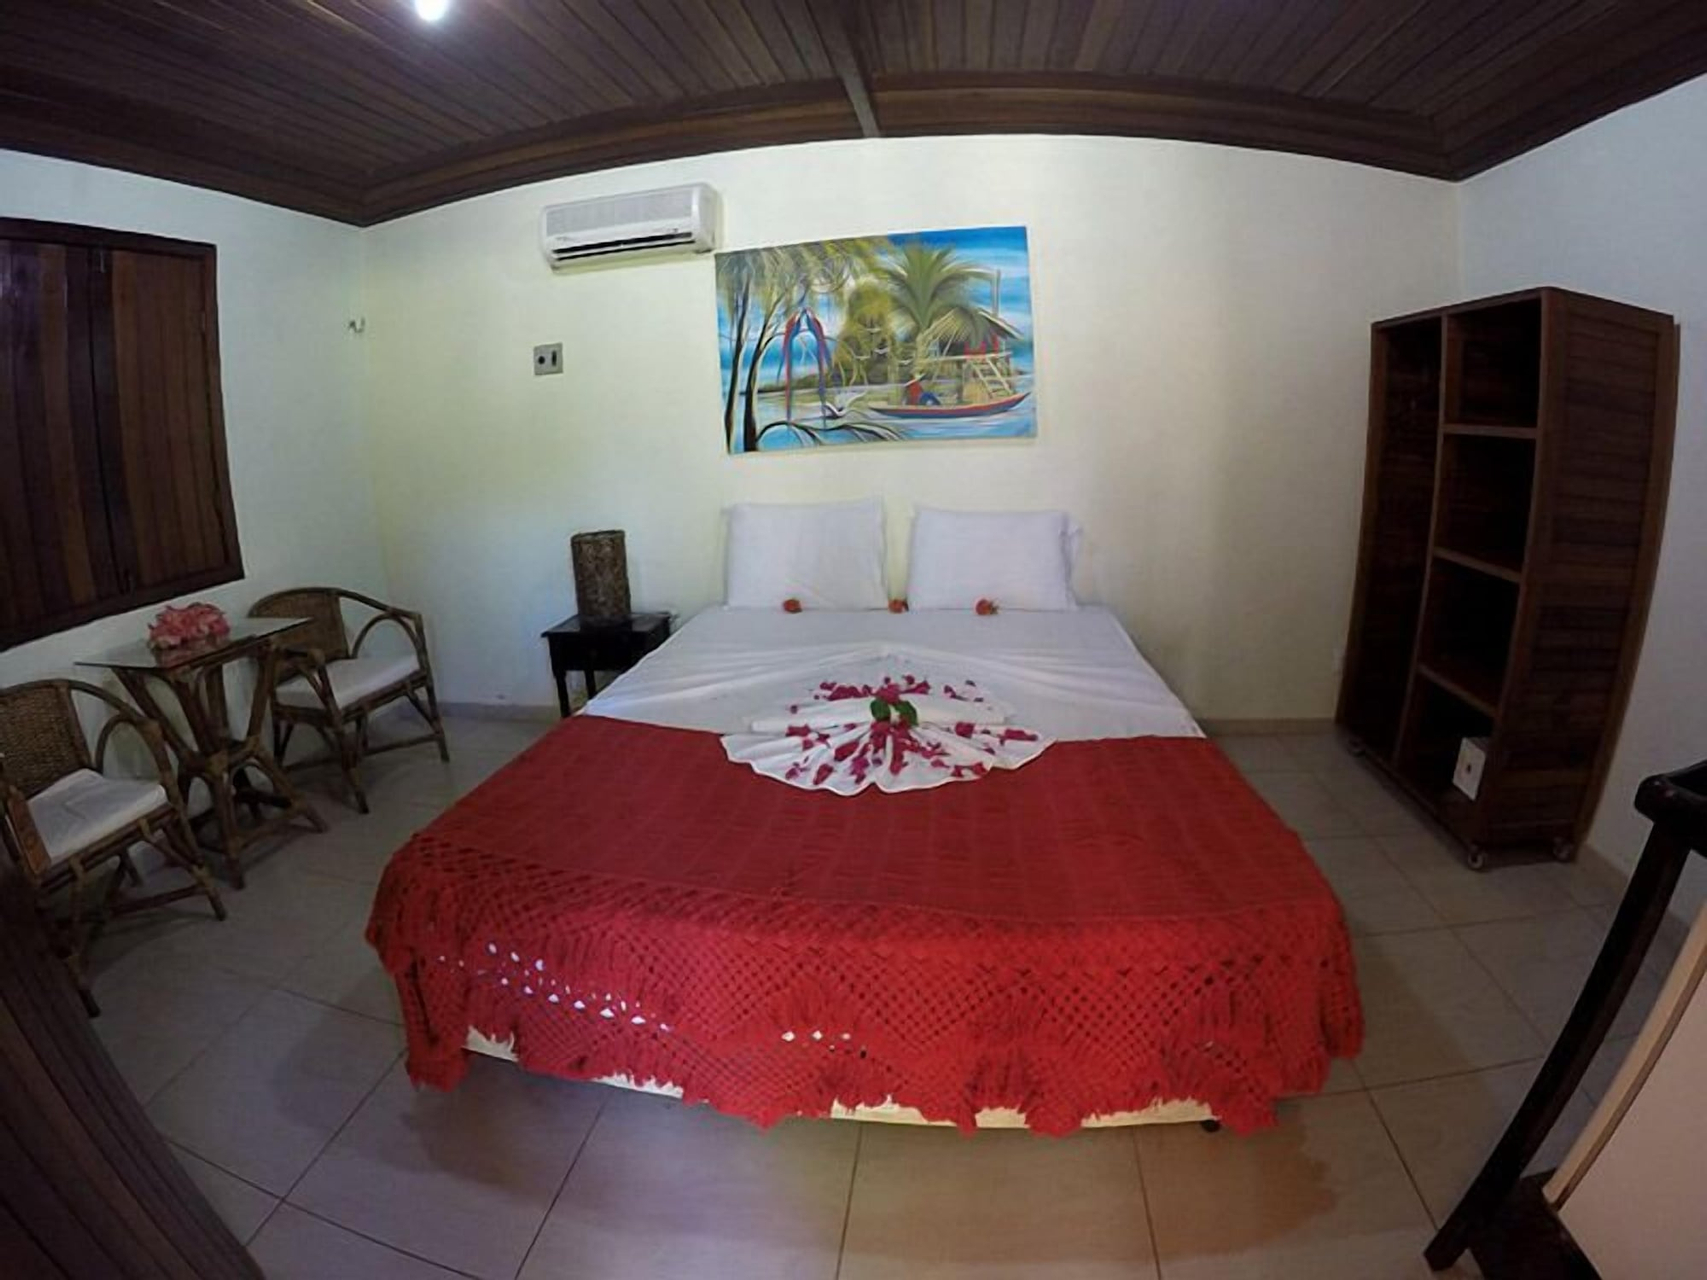 Bedroom 3, Pousada das canoas, Tibau do Sul